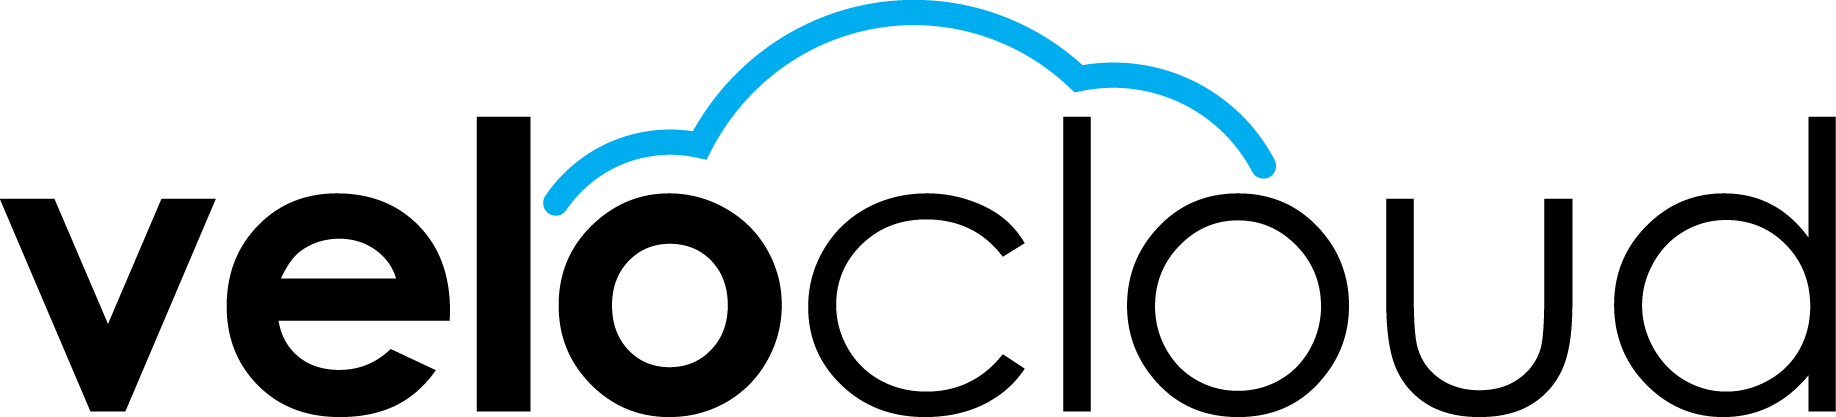 velocloud logo.png